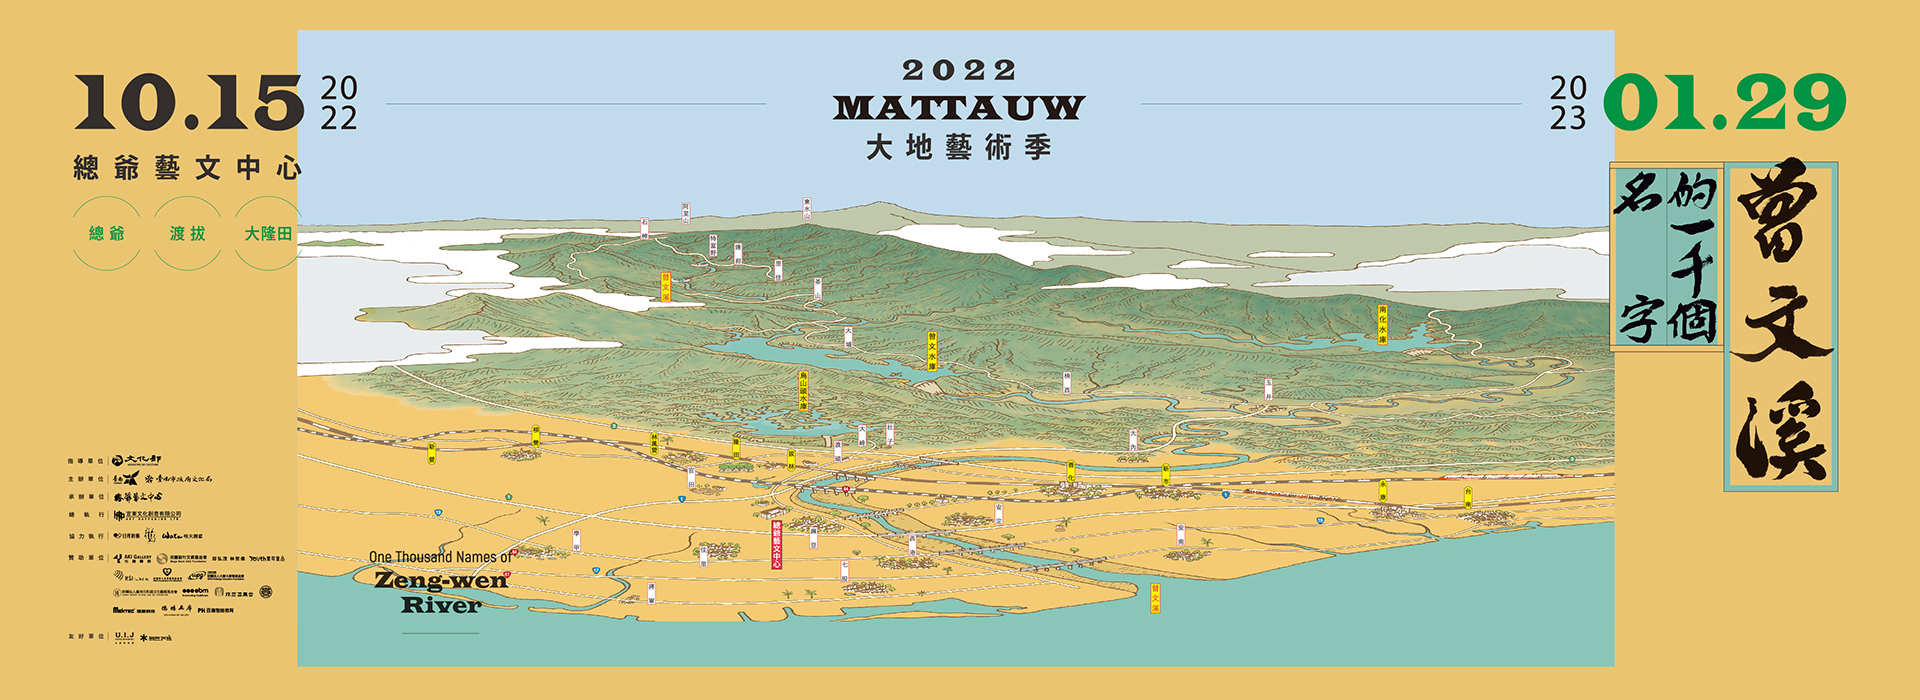 2022 Mattauw 大地藝術季── 曾文溪的一千個名字